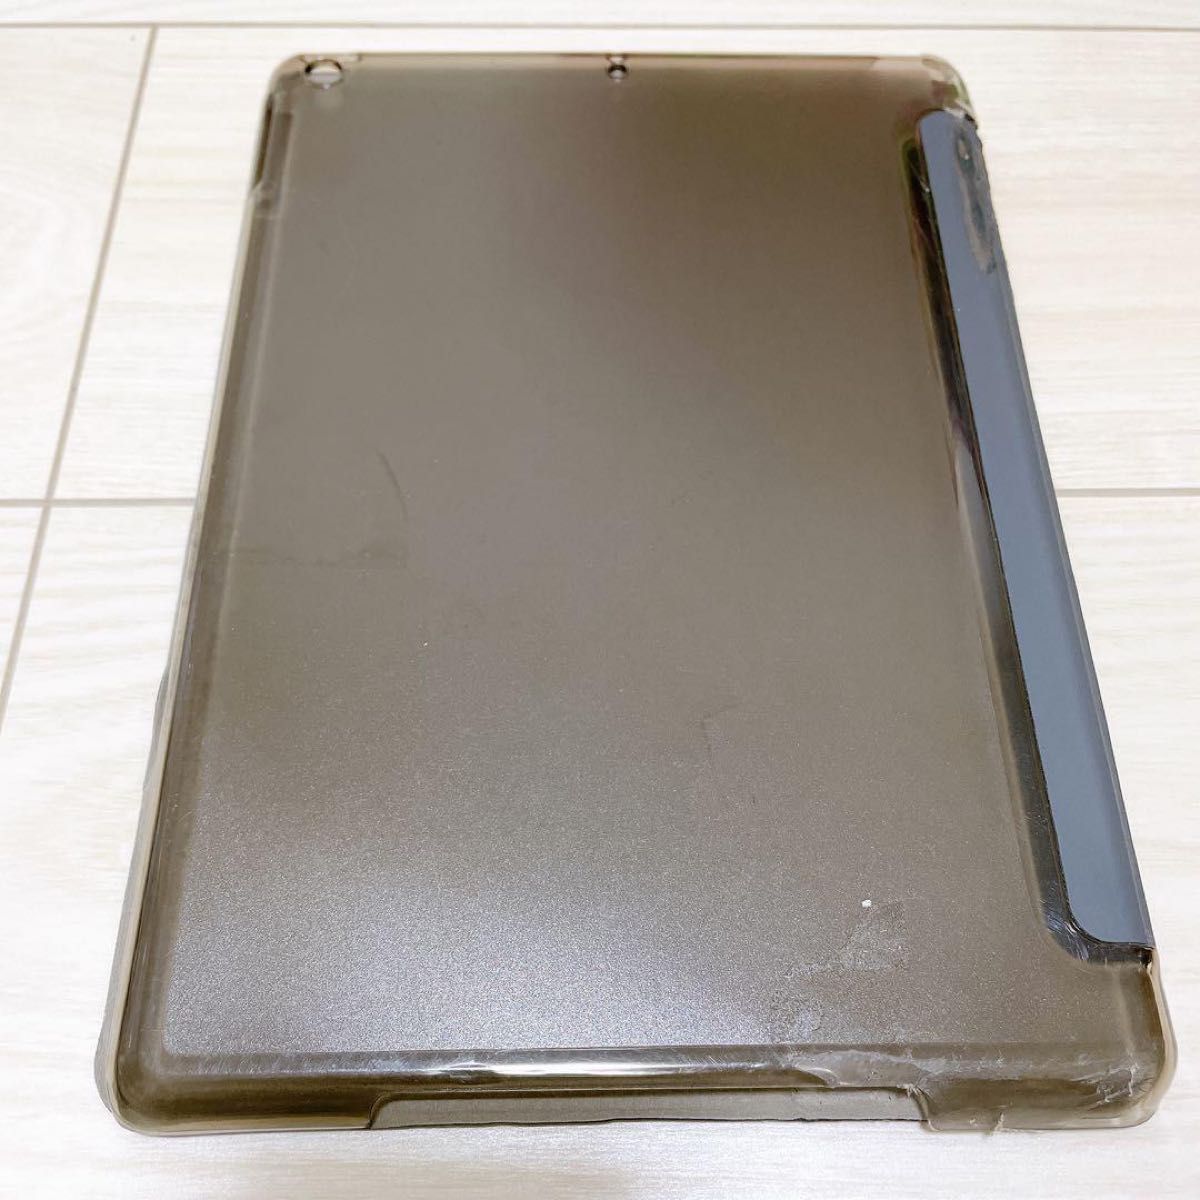 ProCase iPadケース 超薄型 軽量 スタンド機能 スマートケース カバー